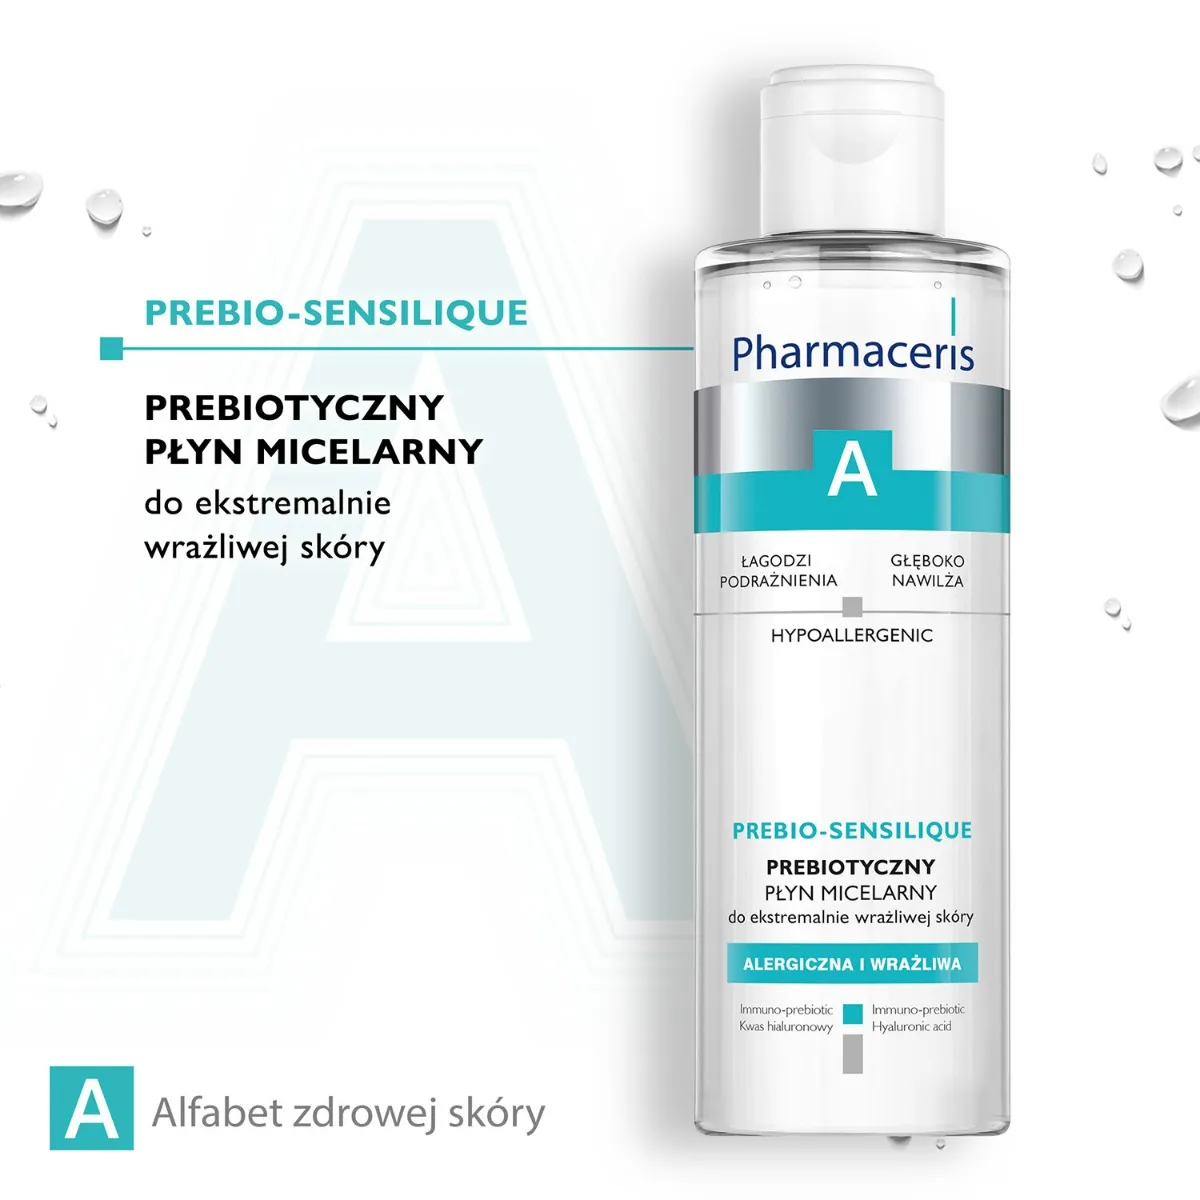 Pharmaceris A Prebio-Sensilique, prebiotyczny płyn micelarny do ekstremalnie wrażliwej skóry, 200ml 